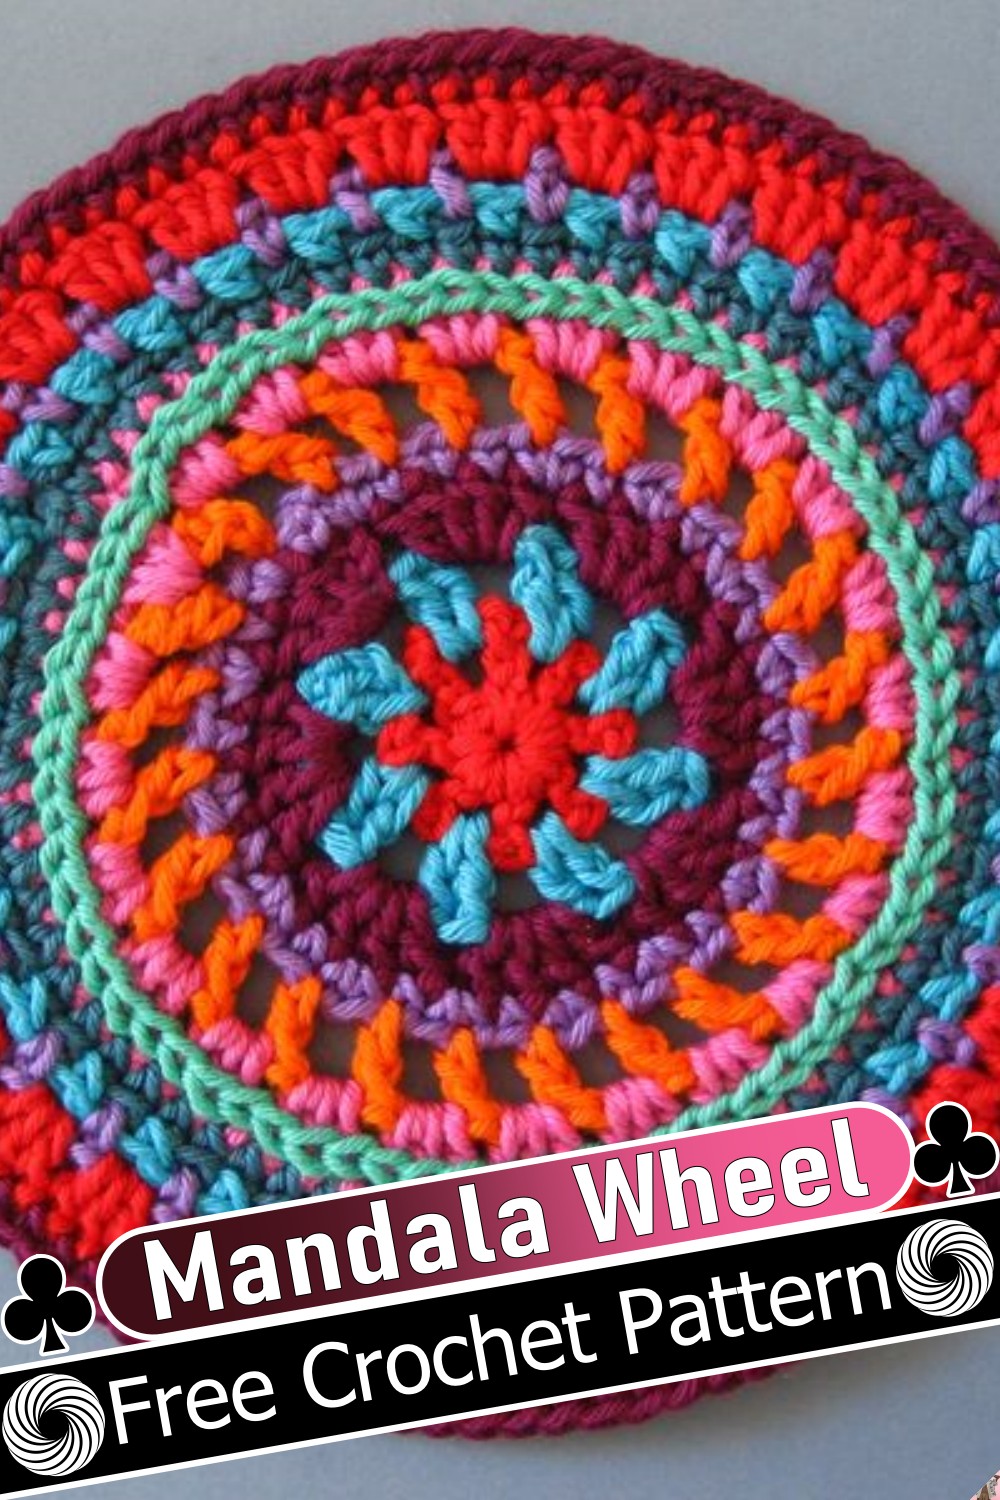 Mandala Wheel